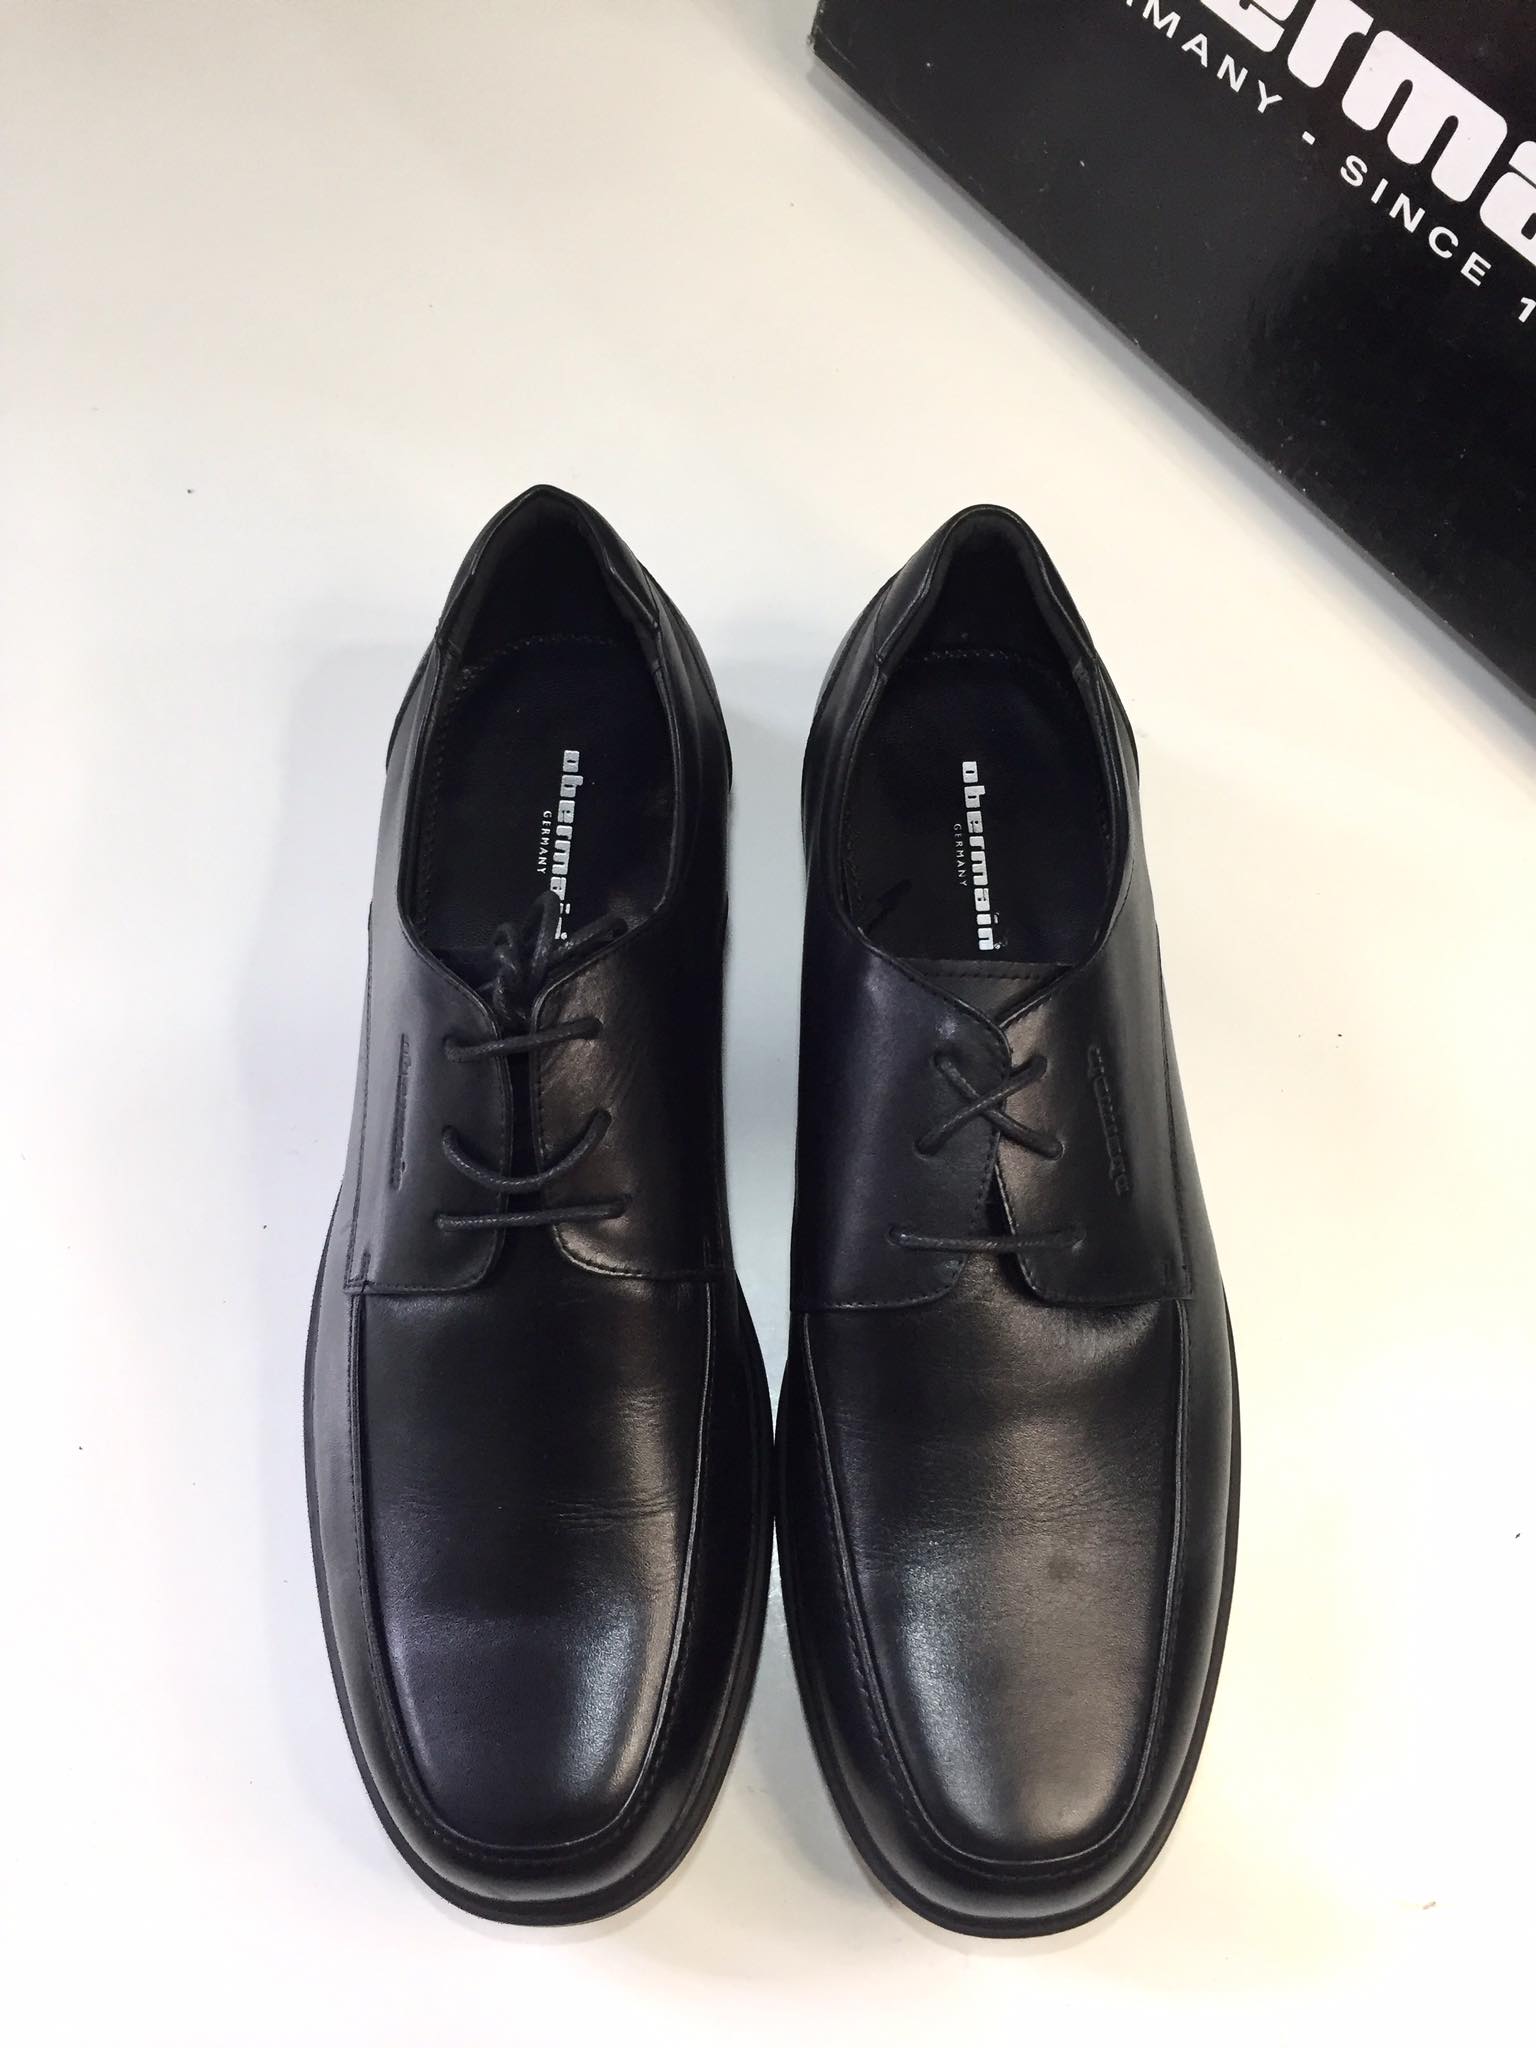 giày da nam Onermaint chinh hãng xách tay , thương hiệu cao cấp của Đức